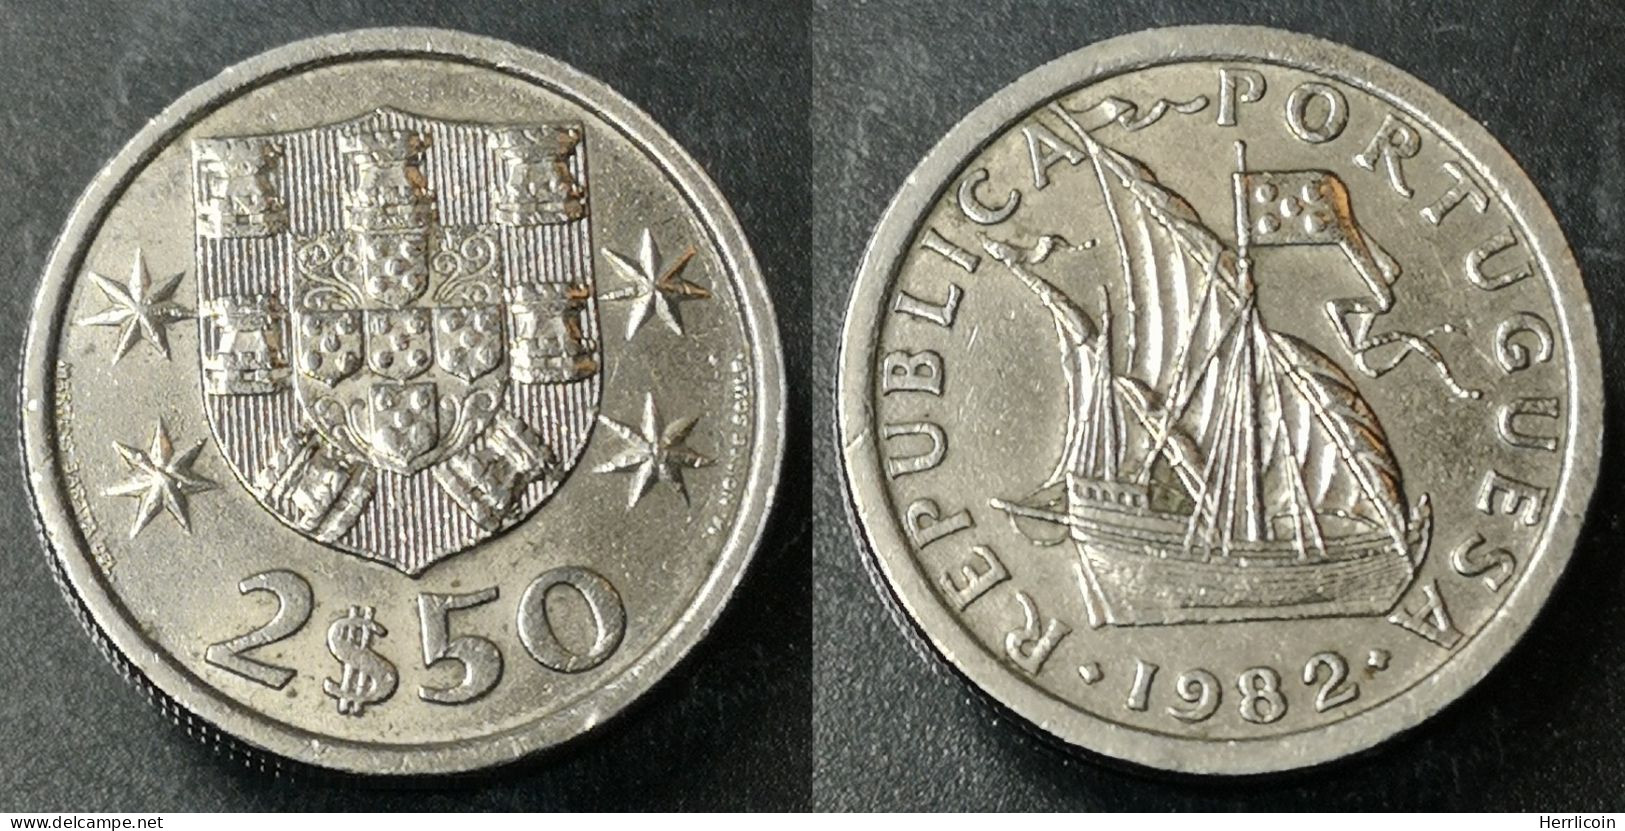 Monnaie Portugal - 1982 - 2.50 Escudos - Portogallo